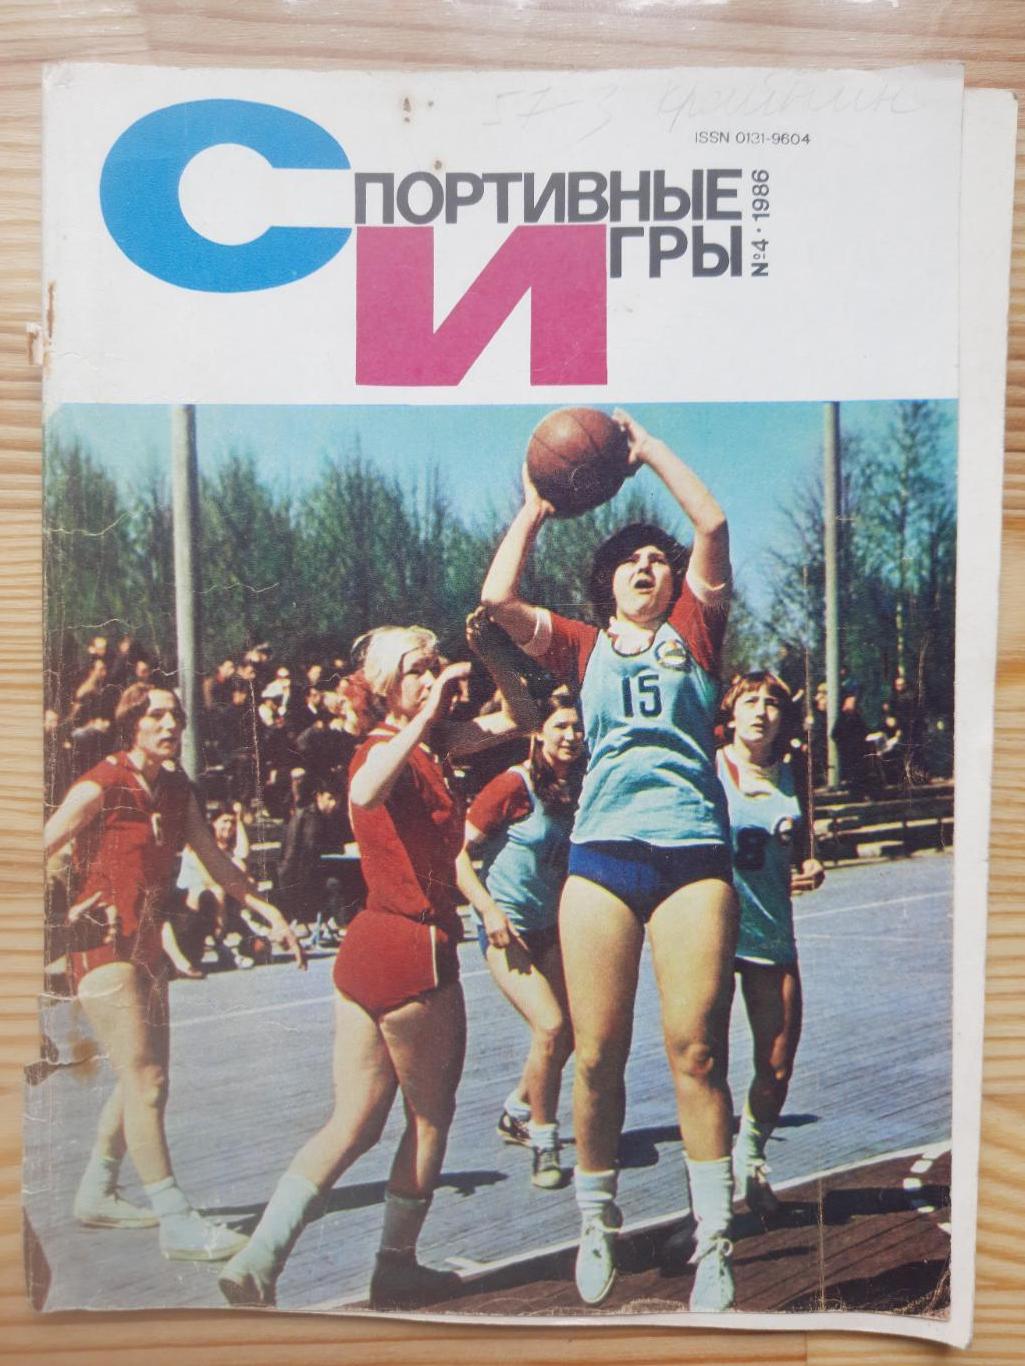 Спортивные игры №4, 1986